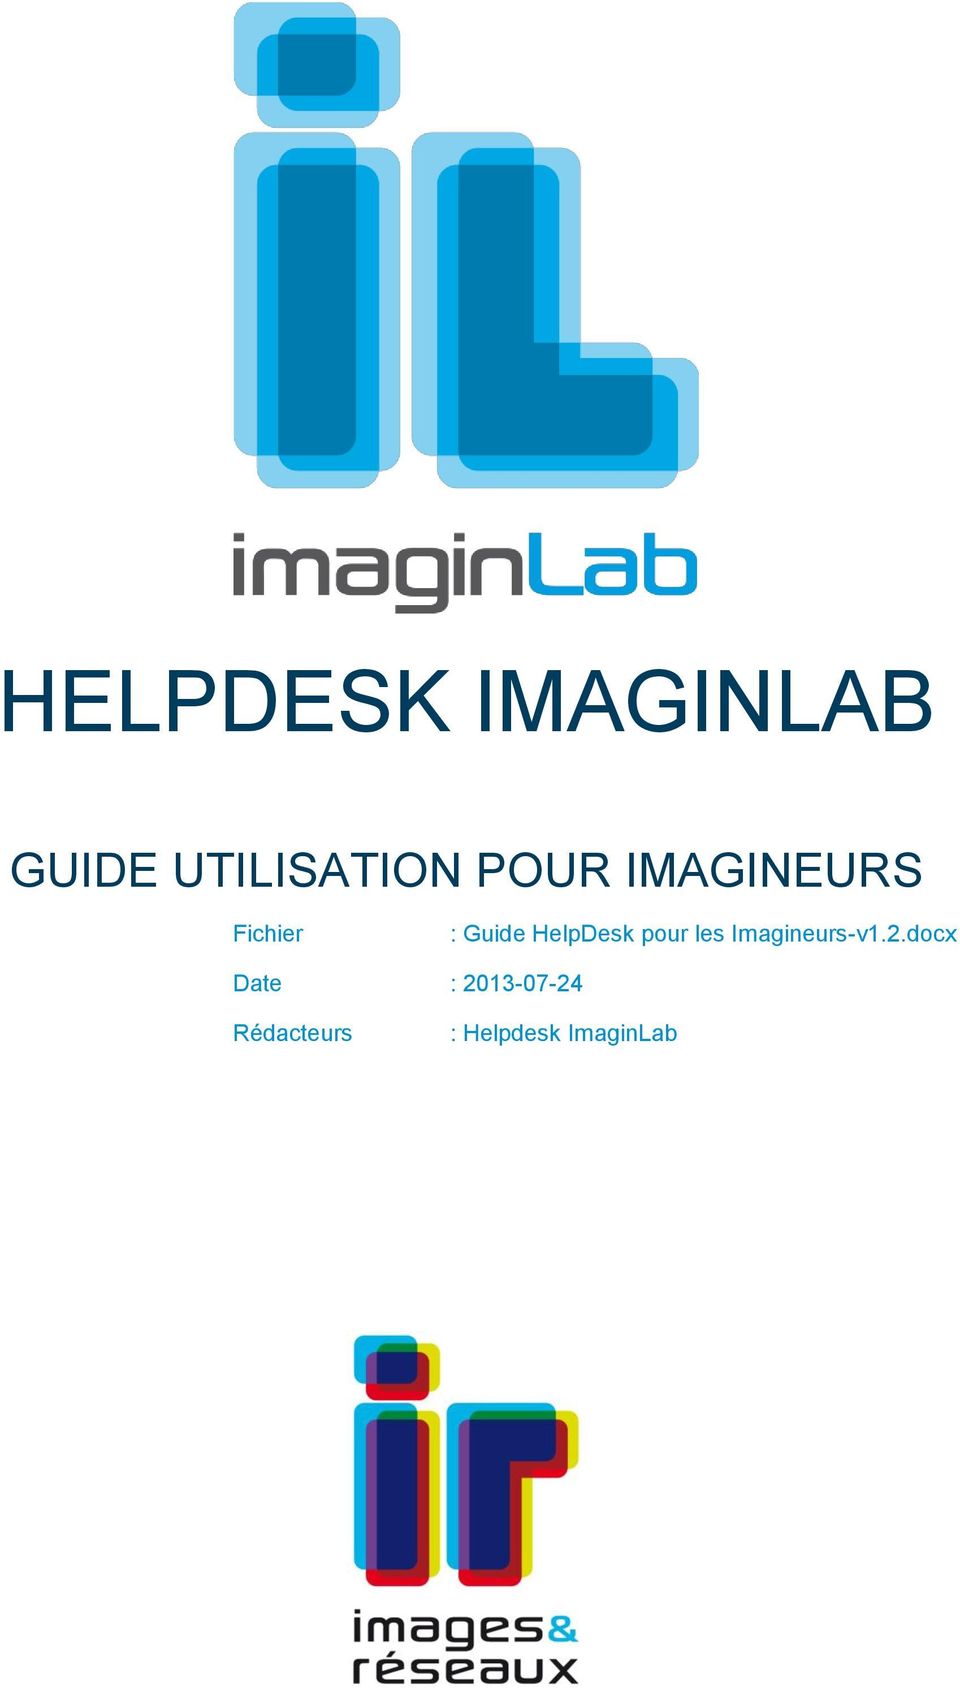 HelpDesk pour les Imagineurs-v1.2.